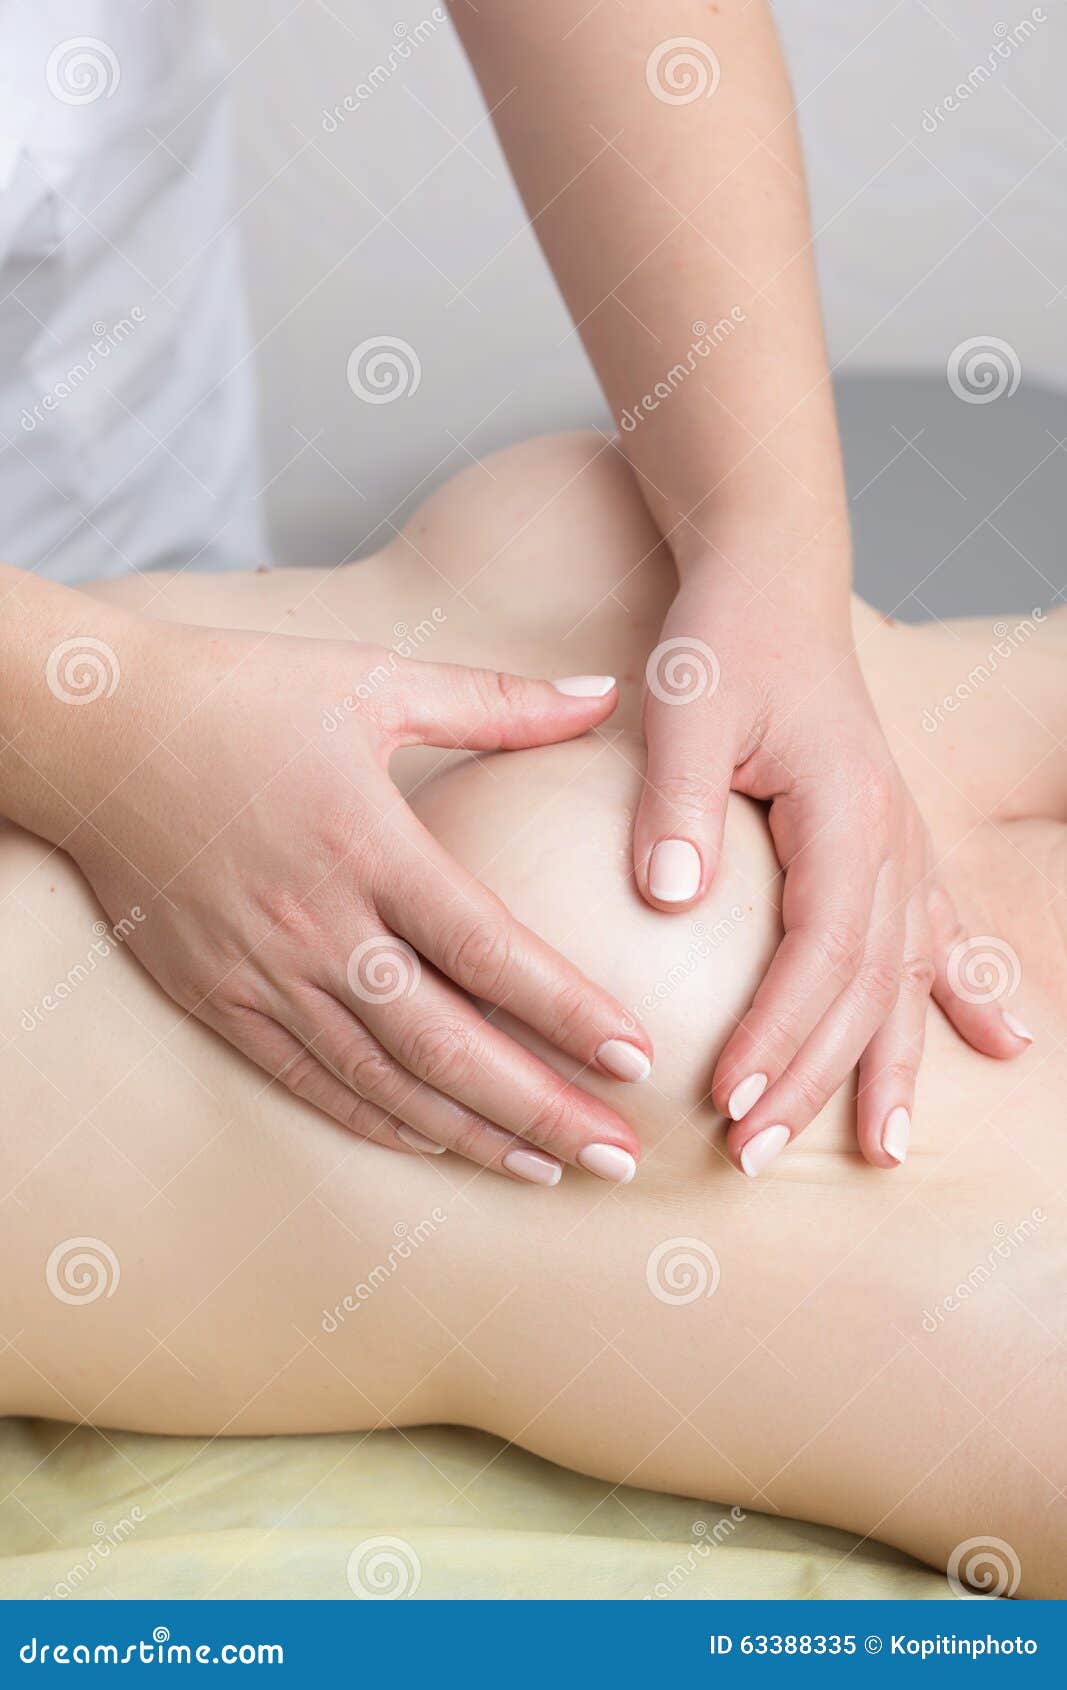 массаж женской грудью это фото 39